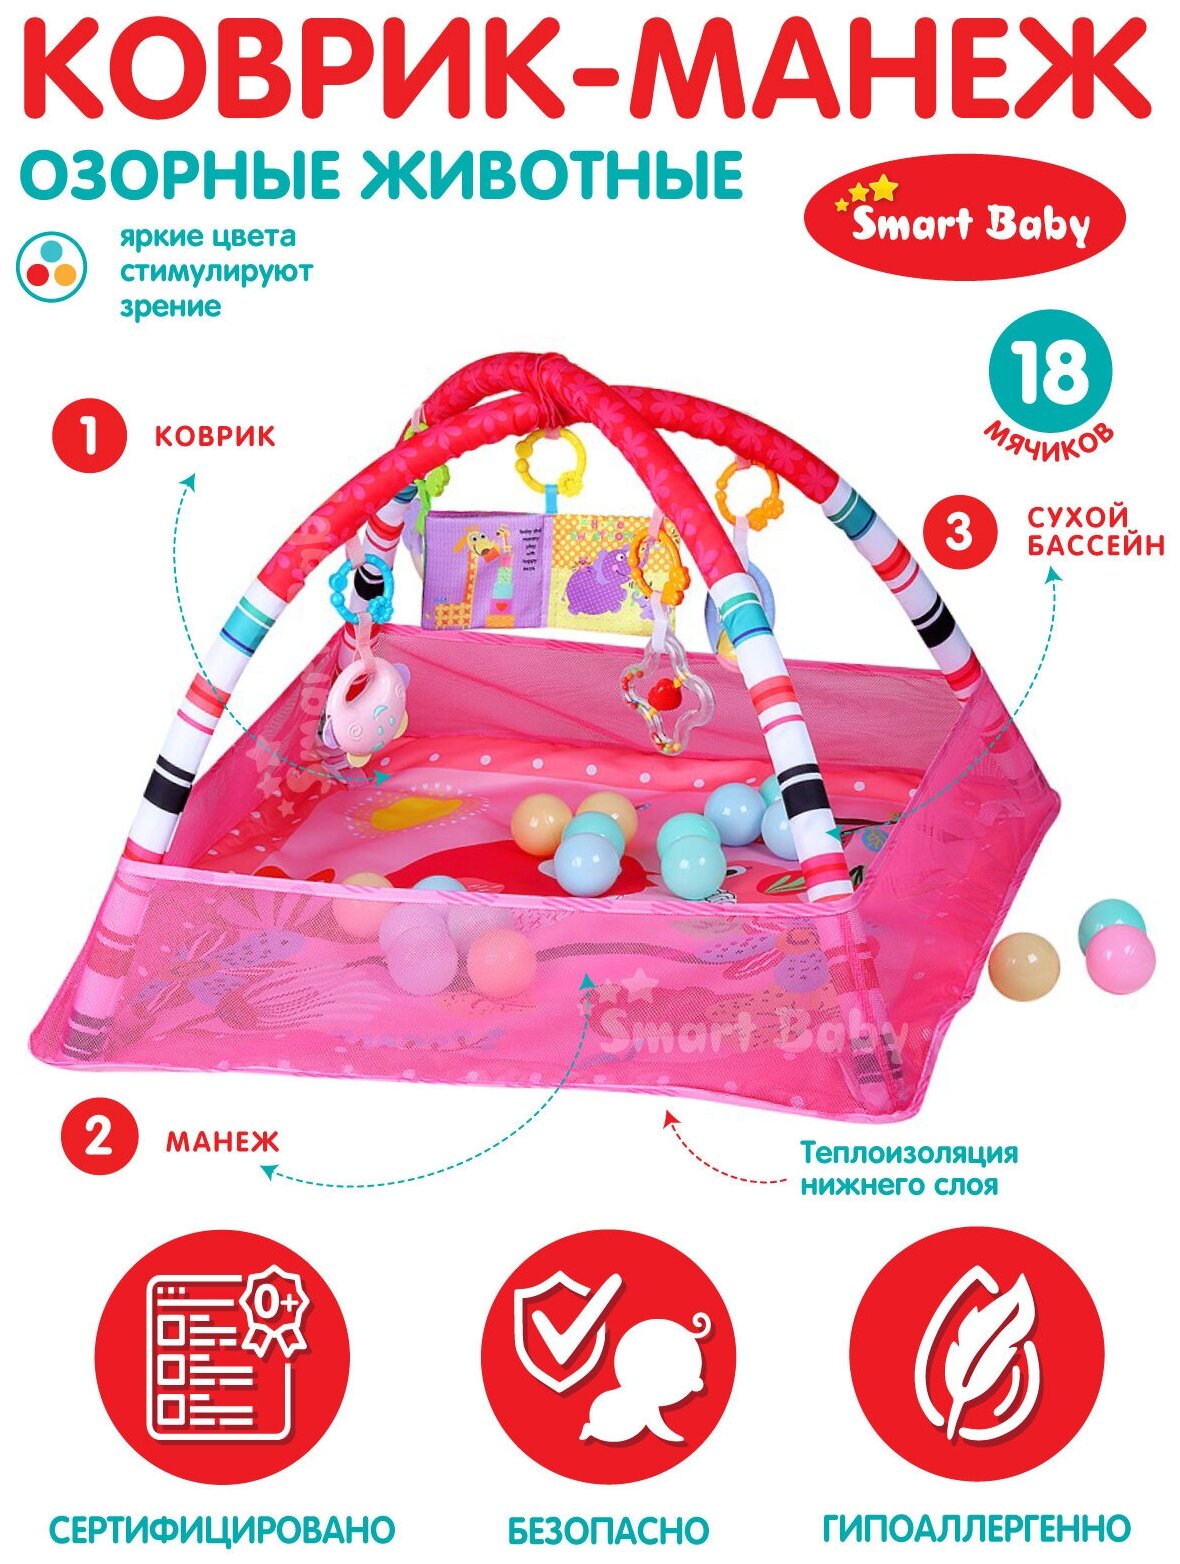 Коврик развивающий Озорные животные ТМ Smart Baby 3 в 1, манеж, сухой бассейн, 18 шариков, подвесные игрушки, погремушки, развивающая книжка, розовый